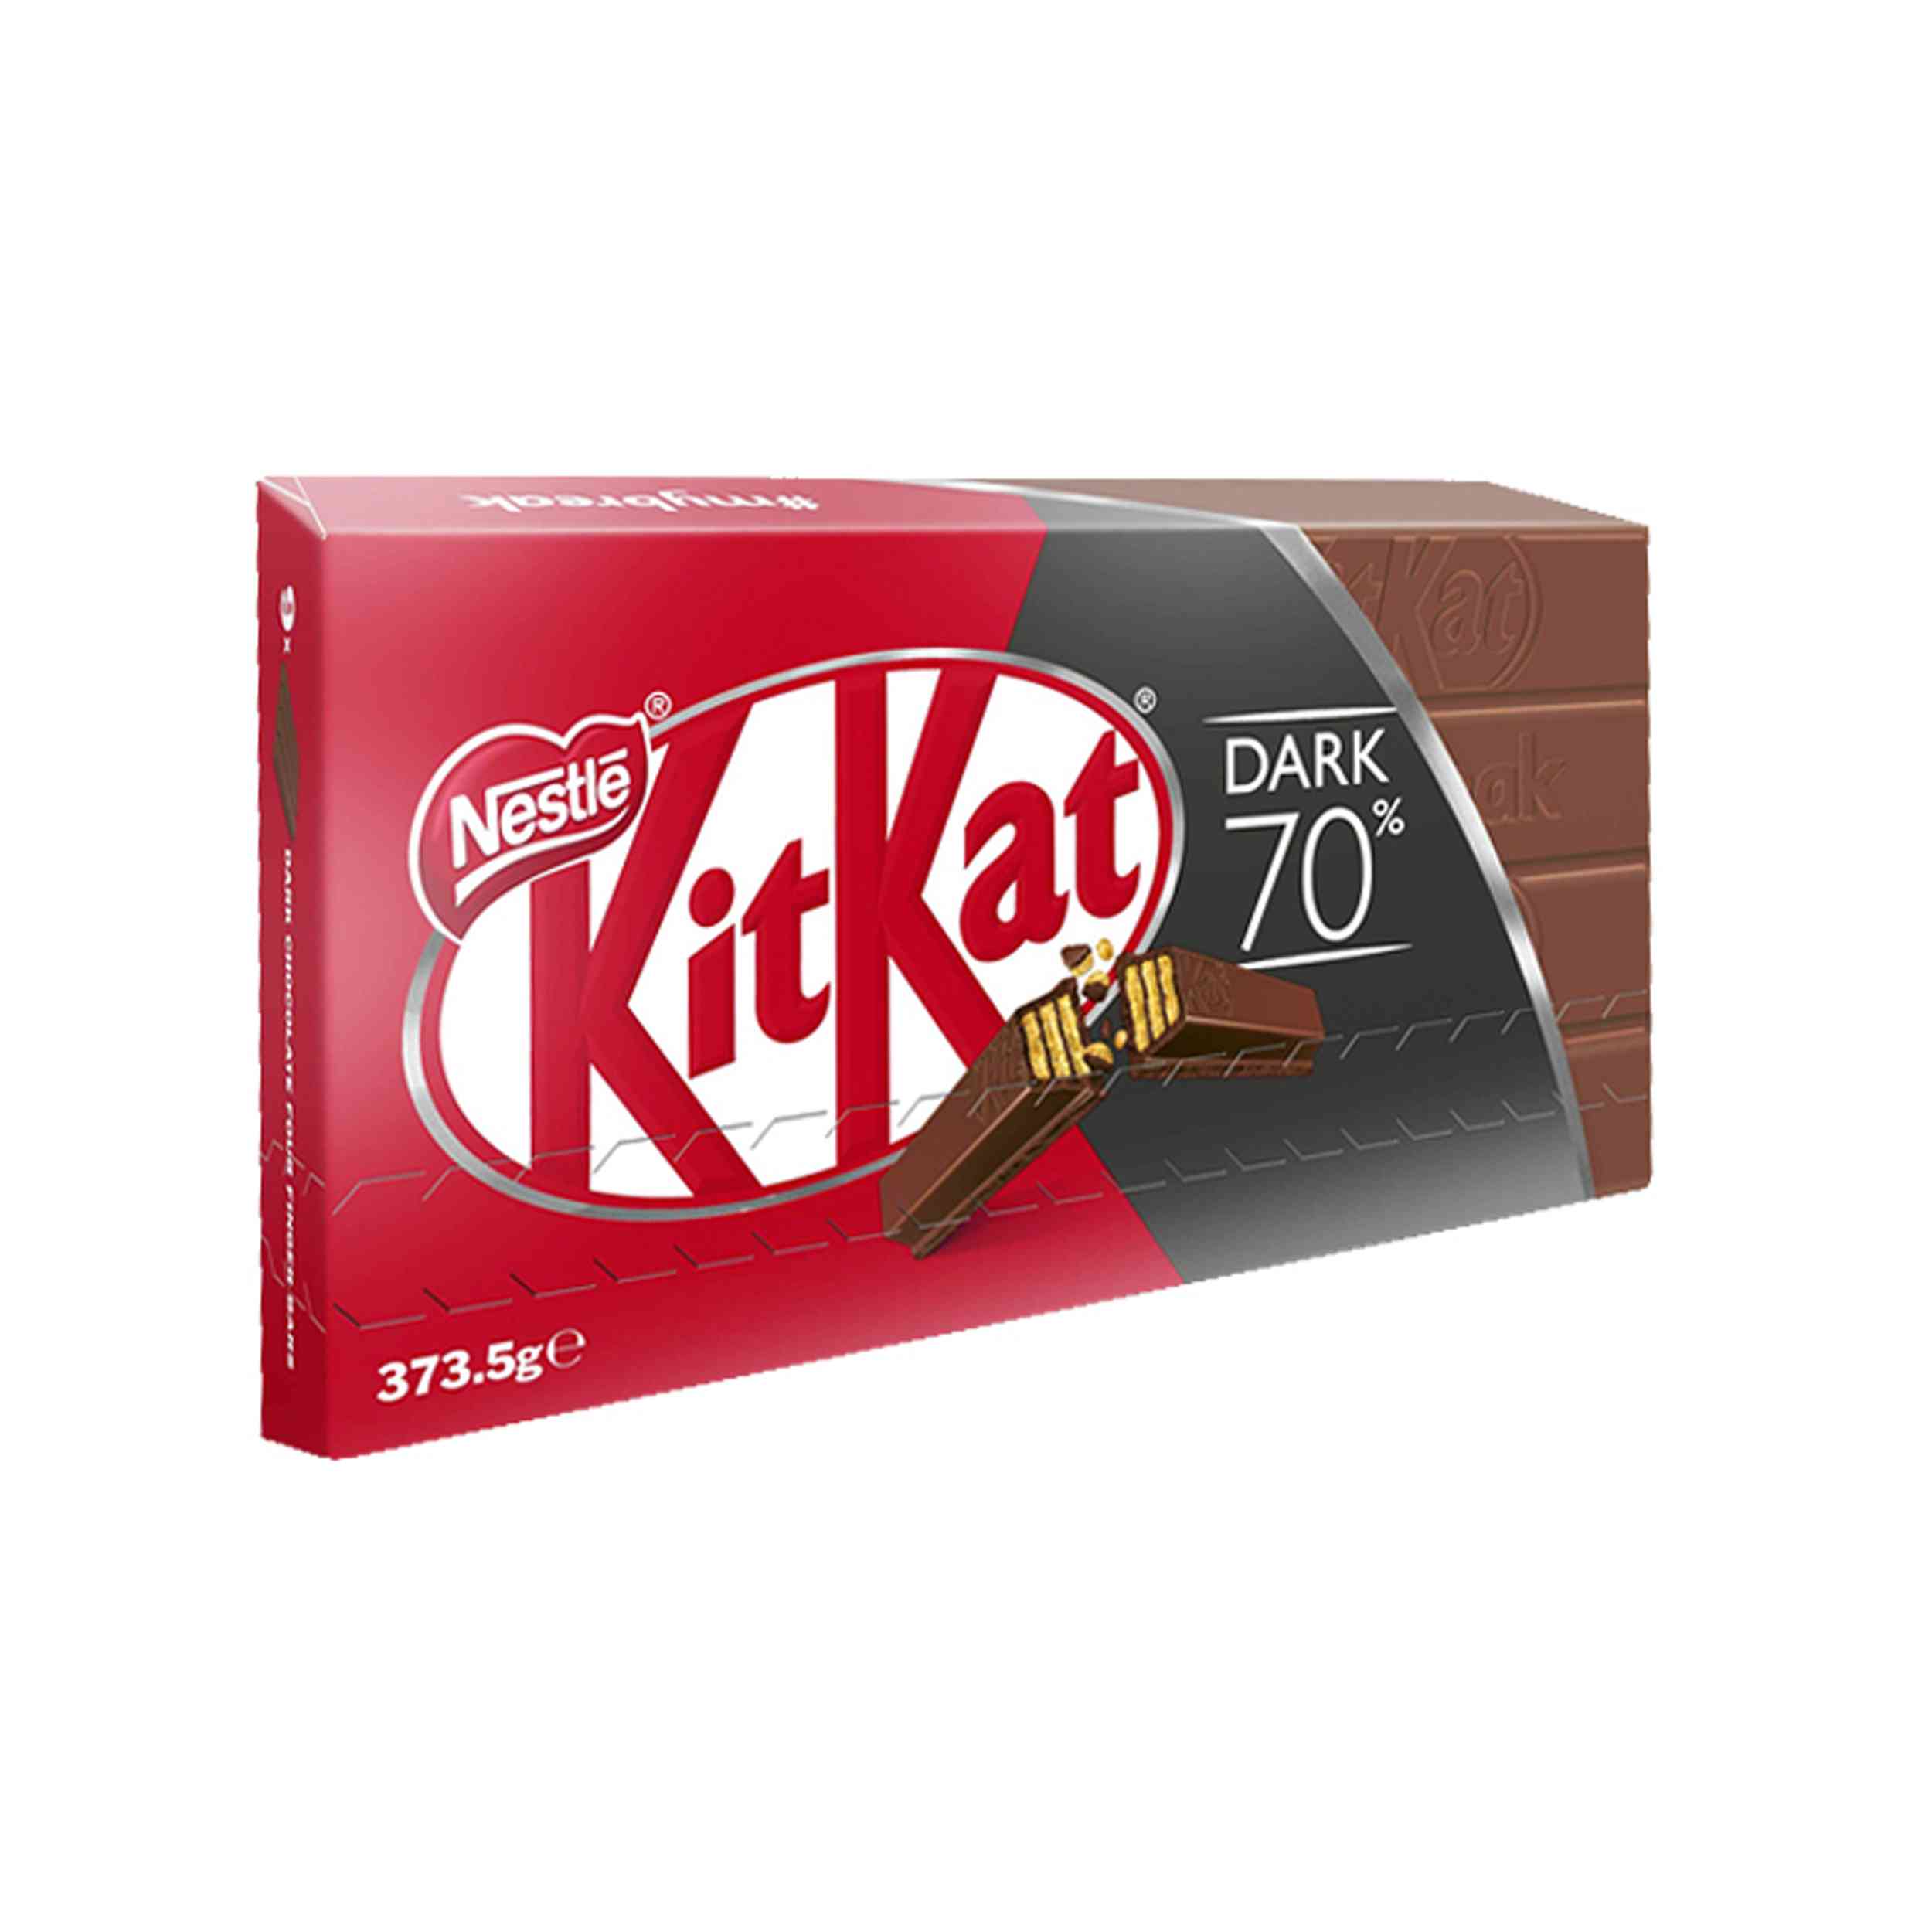 KitKat Iconic